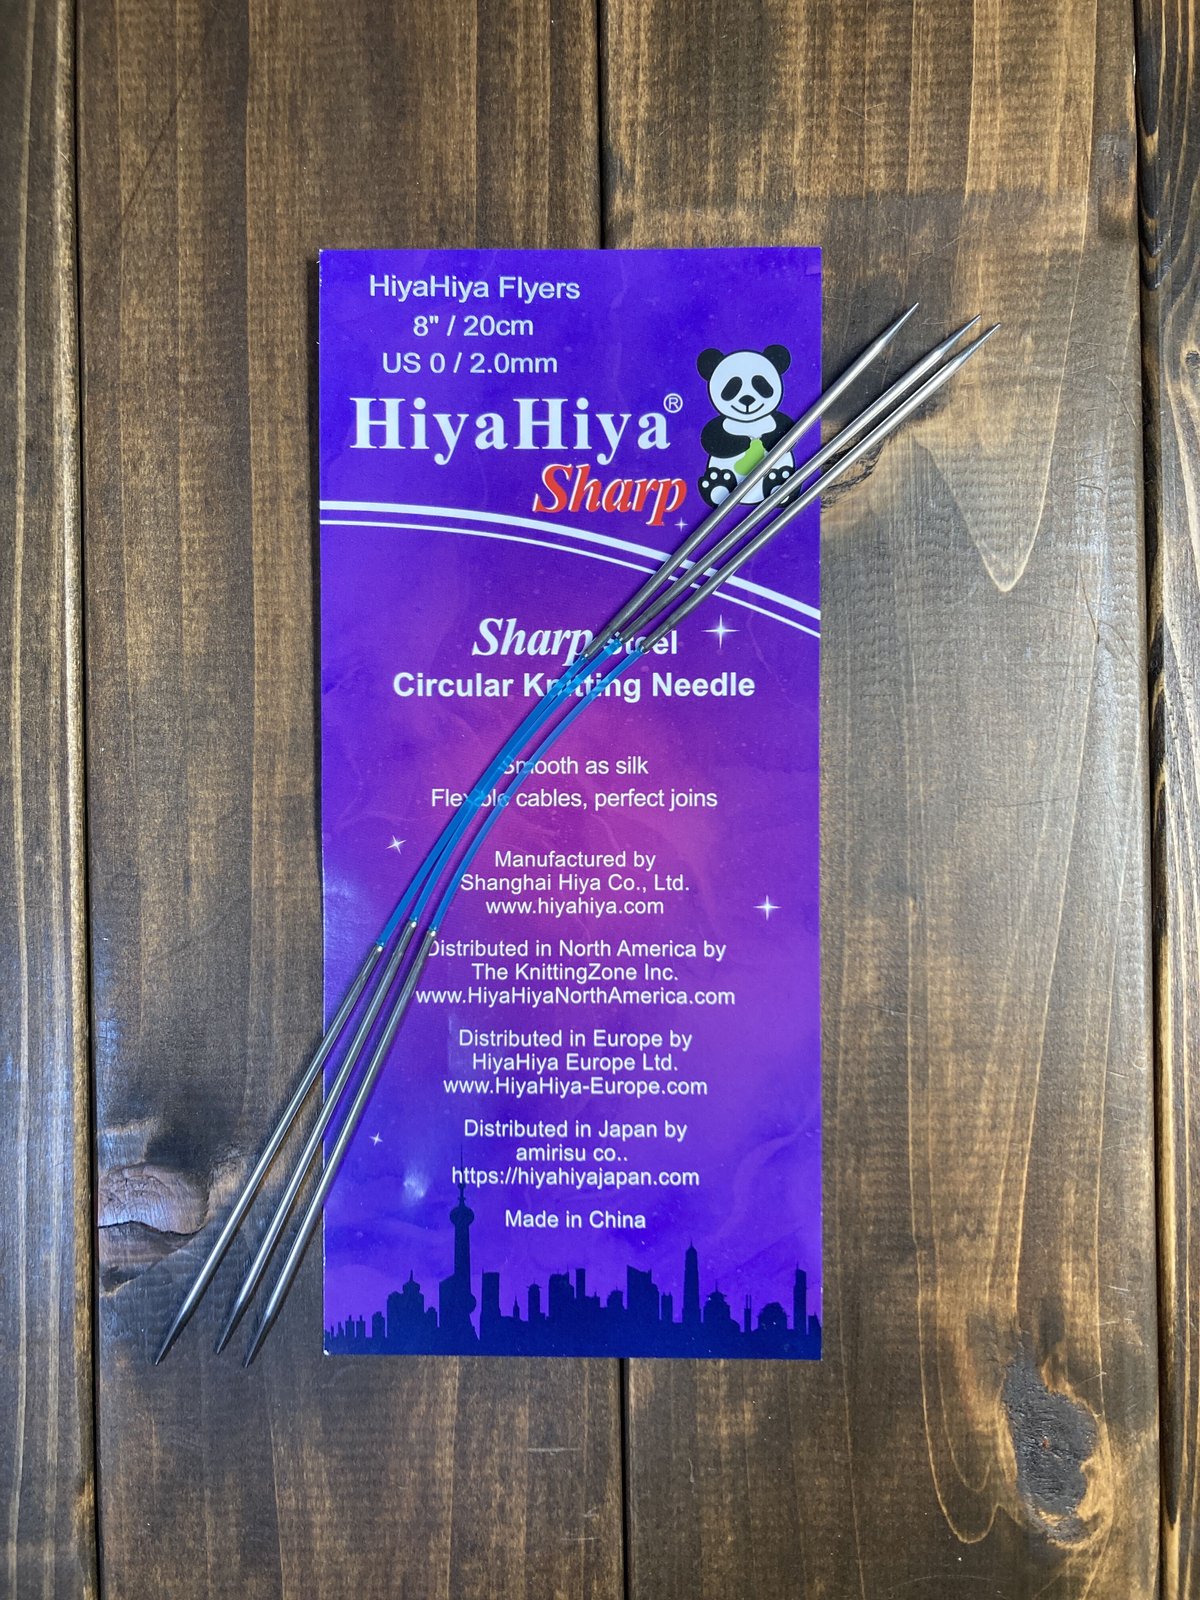 HiyaHiya] Sharp Interchangeable Tips 5 Small